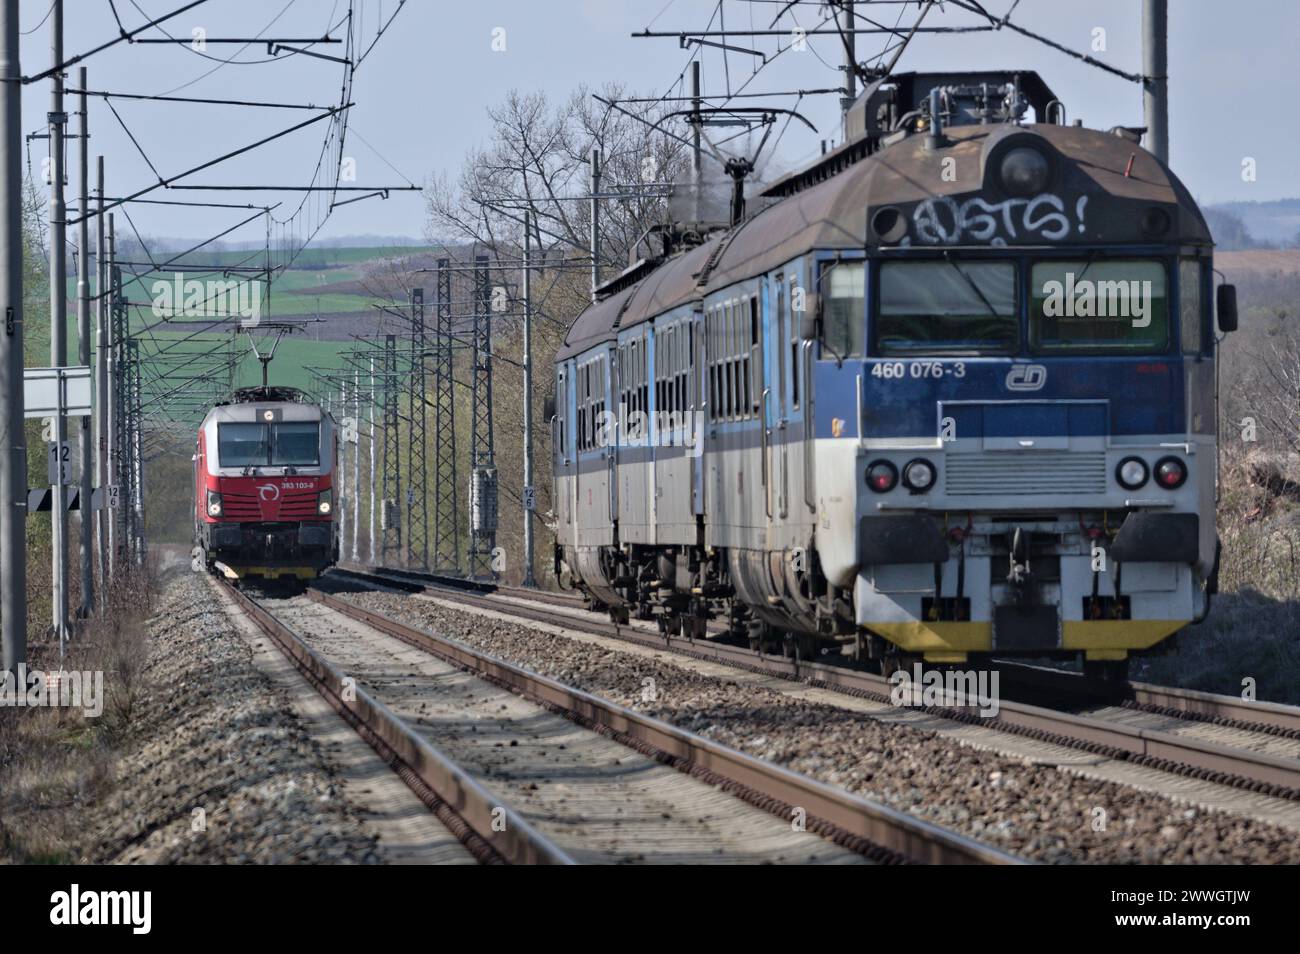 Regionale Lokalzüge des Staatsunternehmens Ceske drahy - Tschechische Eisenbahnen. Großer Eisenbahnbetreiber in der Tschechischen Republik. Stockfoto